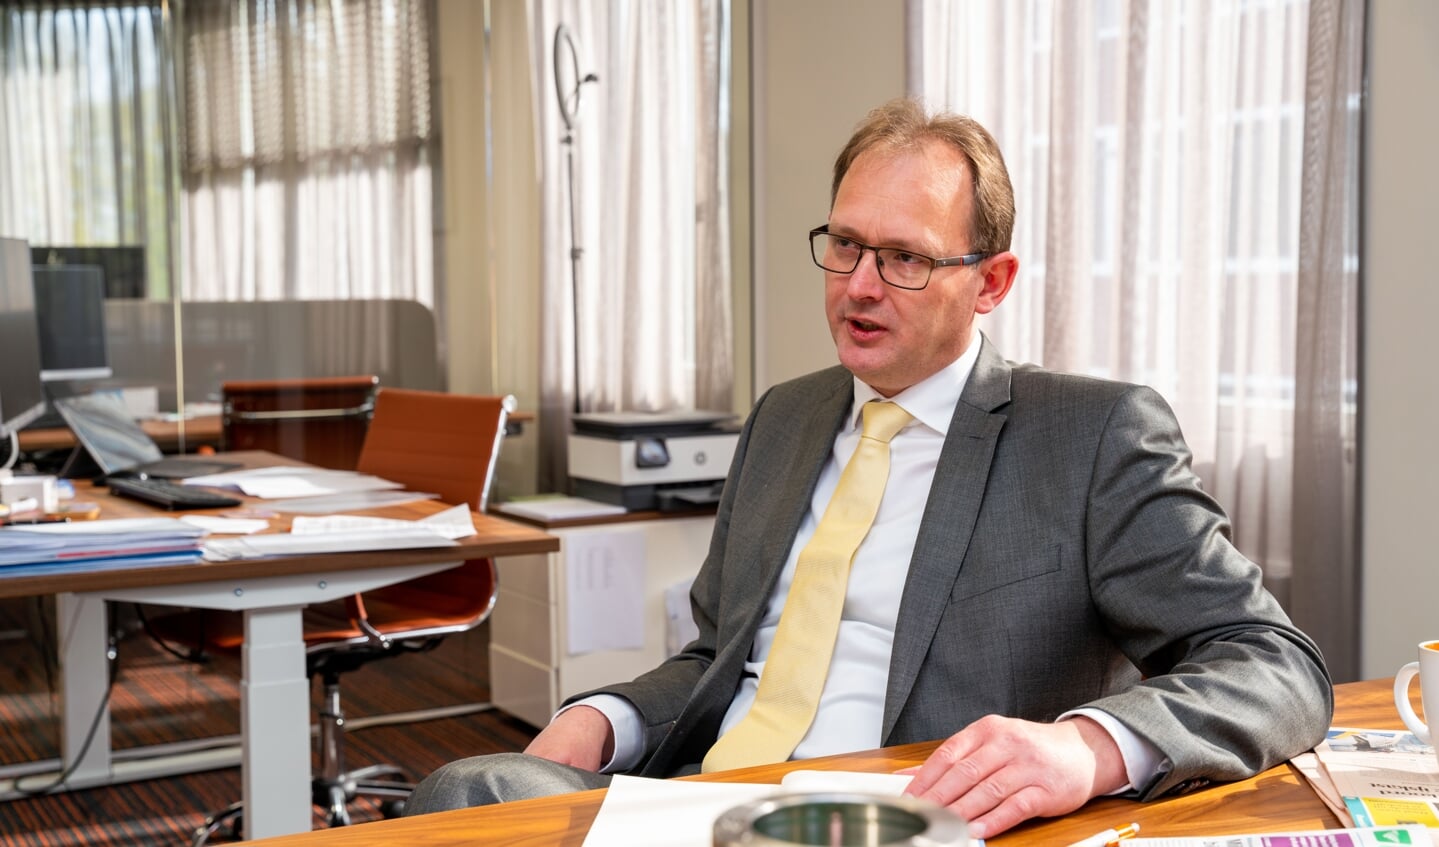 Europarlementariër Bert-Jan Ruissen op zijn kantoor in Krimpen aan den IJssel. 